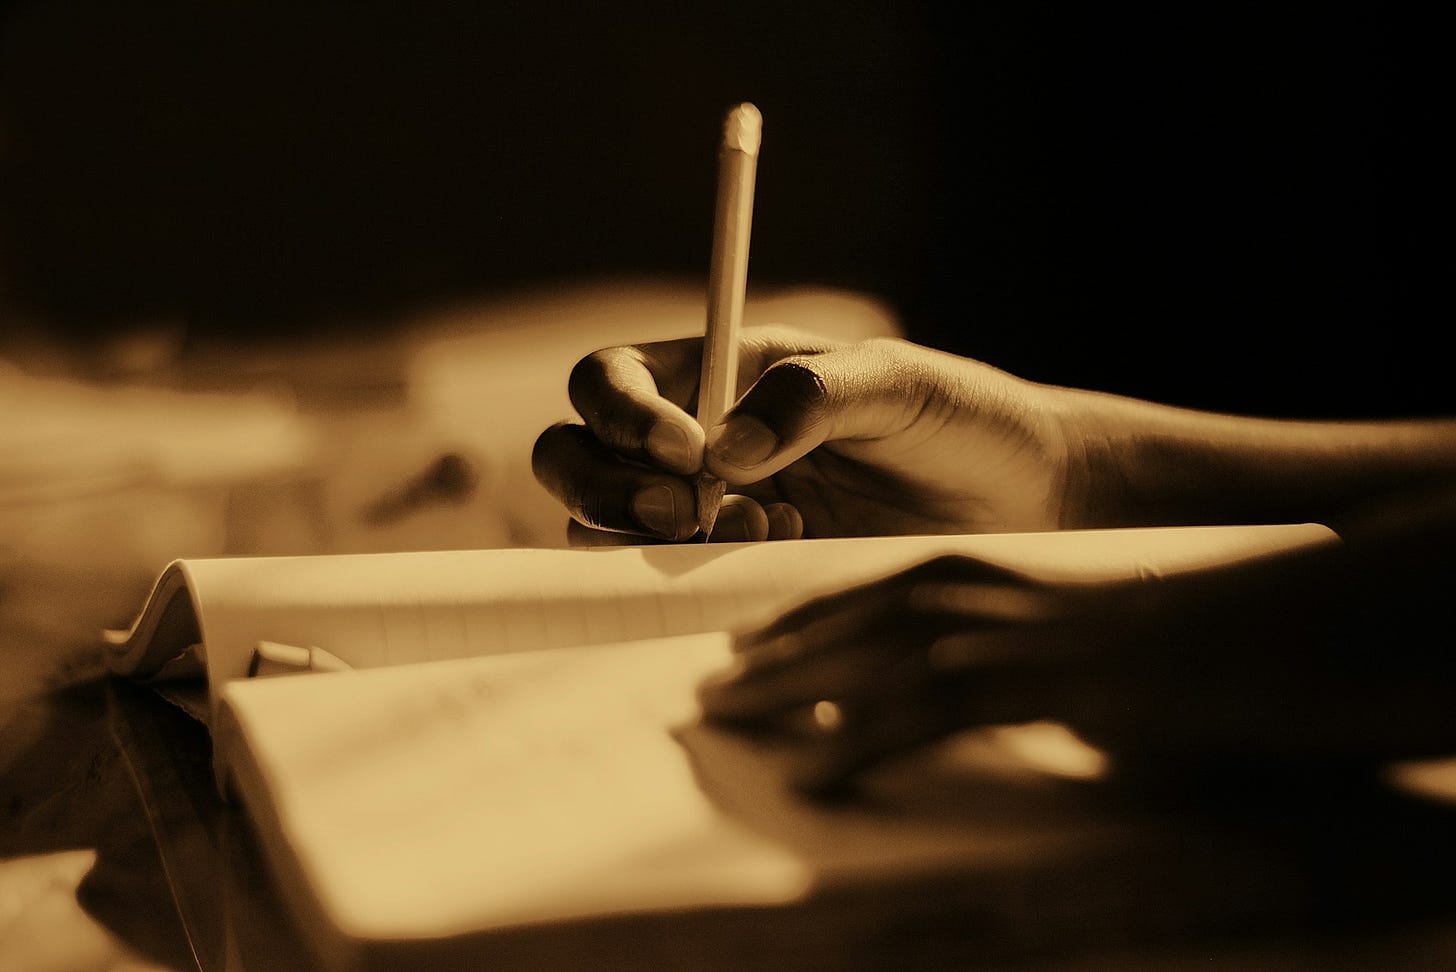 Toni seppia con una mano destra che spunta da destra e con una matita scrive qualcosa su un libro aperto, mentre l'altra in basso riposa distesa sulle pagine. Sfondo nero e sfuocato.